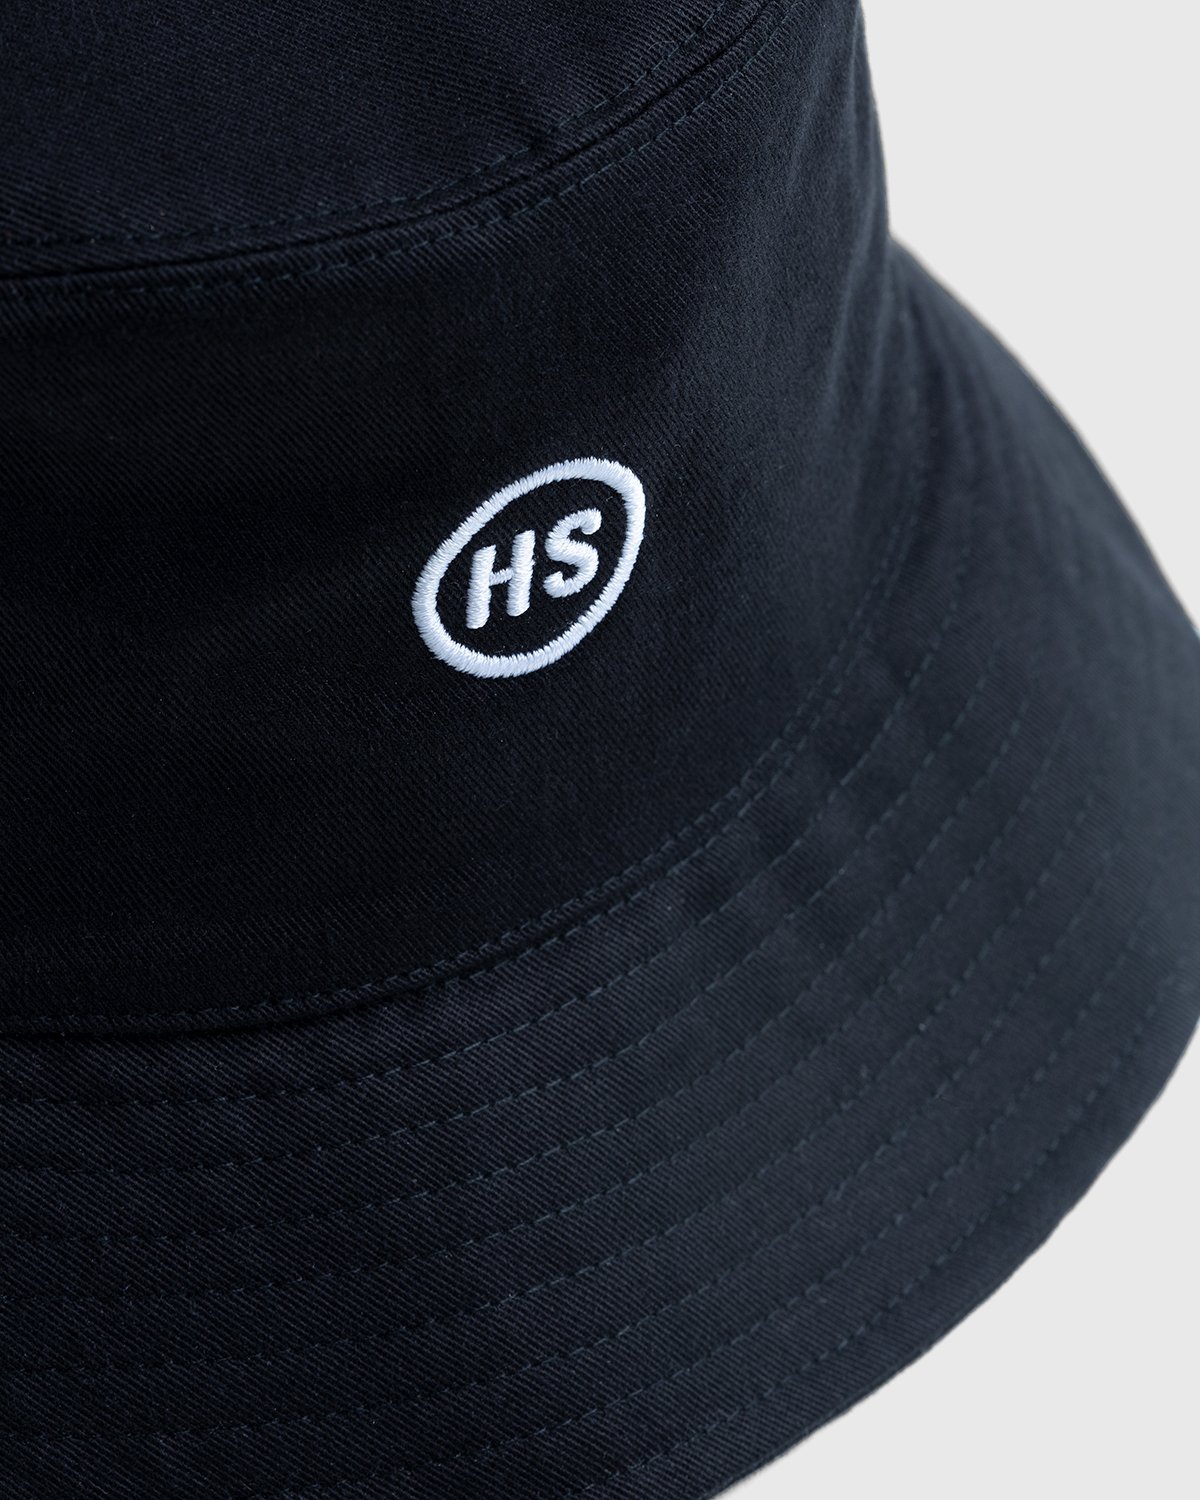 Highsnobiety - Bucket Hat Black - Accessories - Black - Image 3